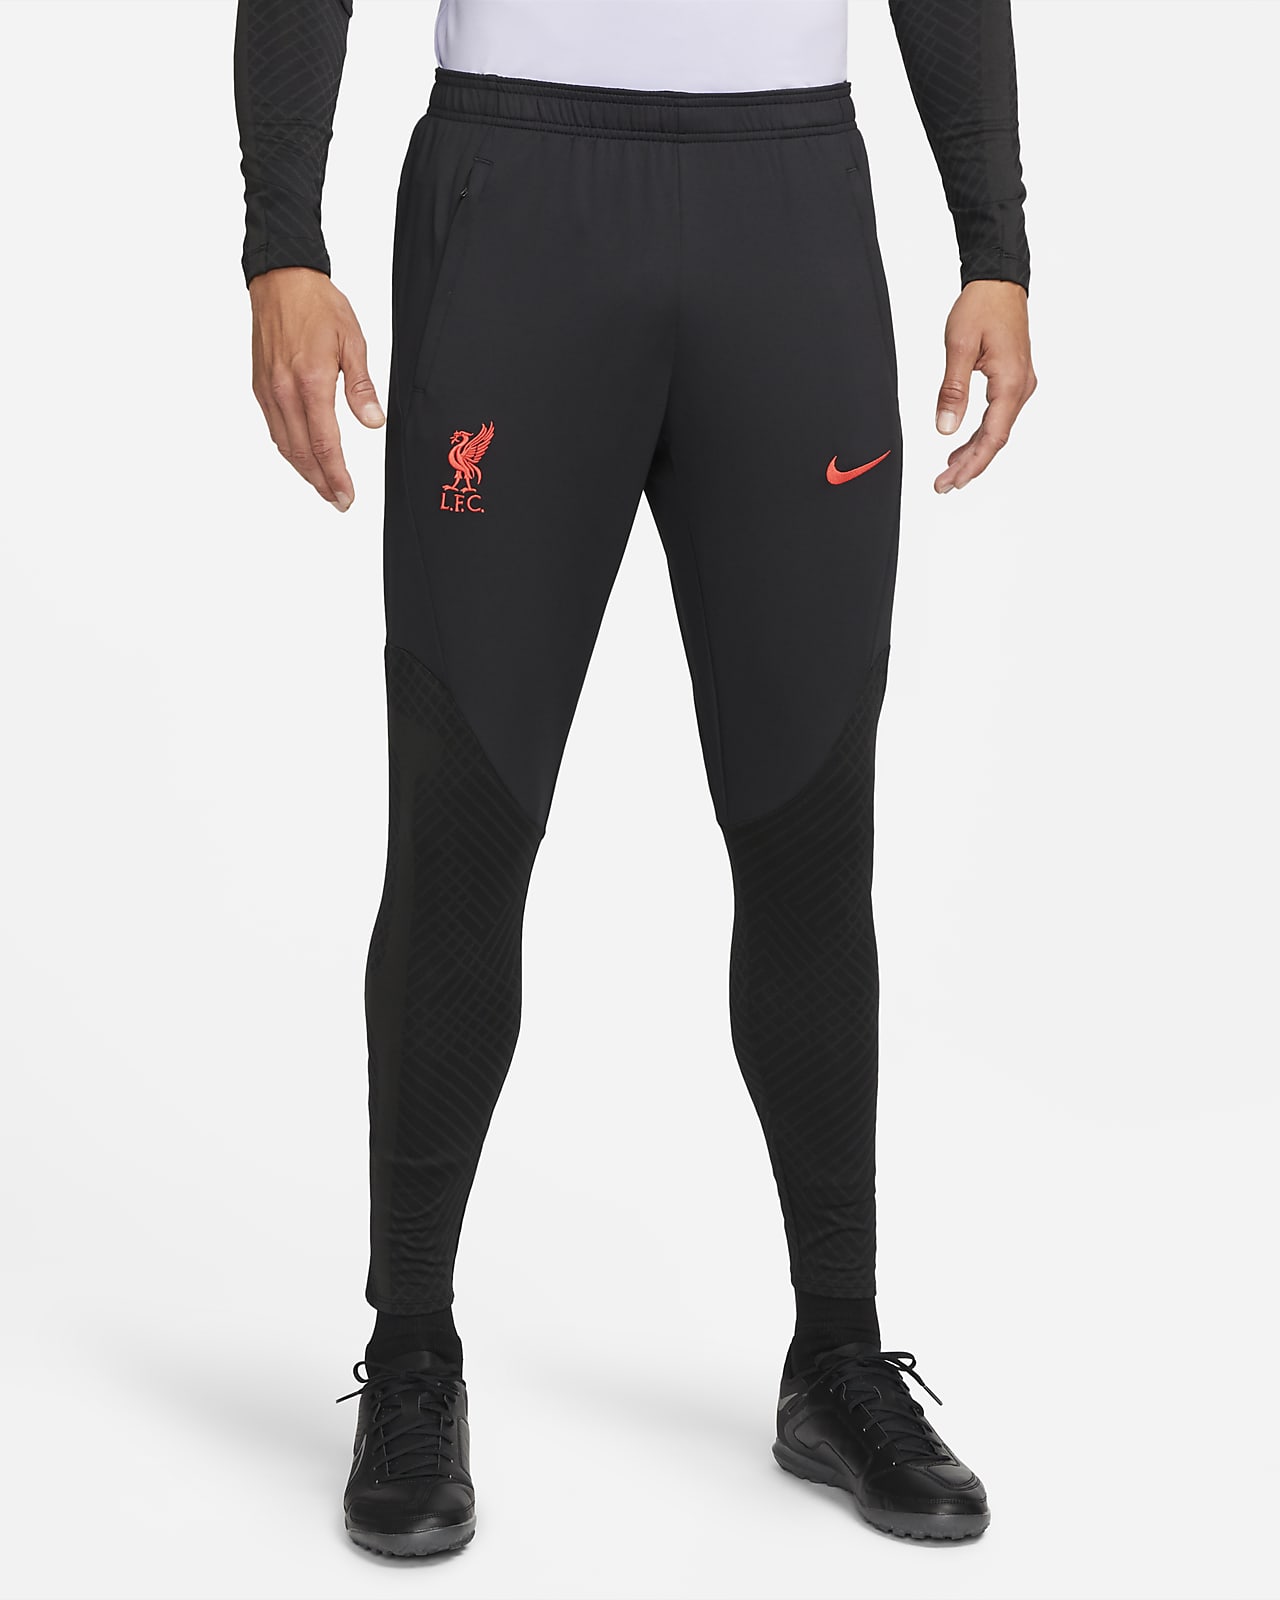 Pantalones de fútbol de visitante para hombre Nike Liverpool Strike.